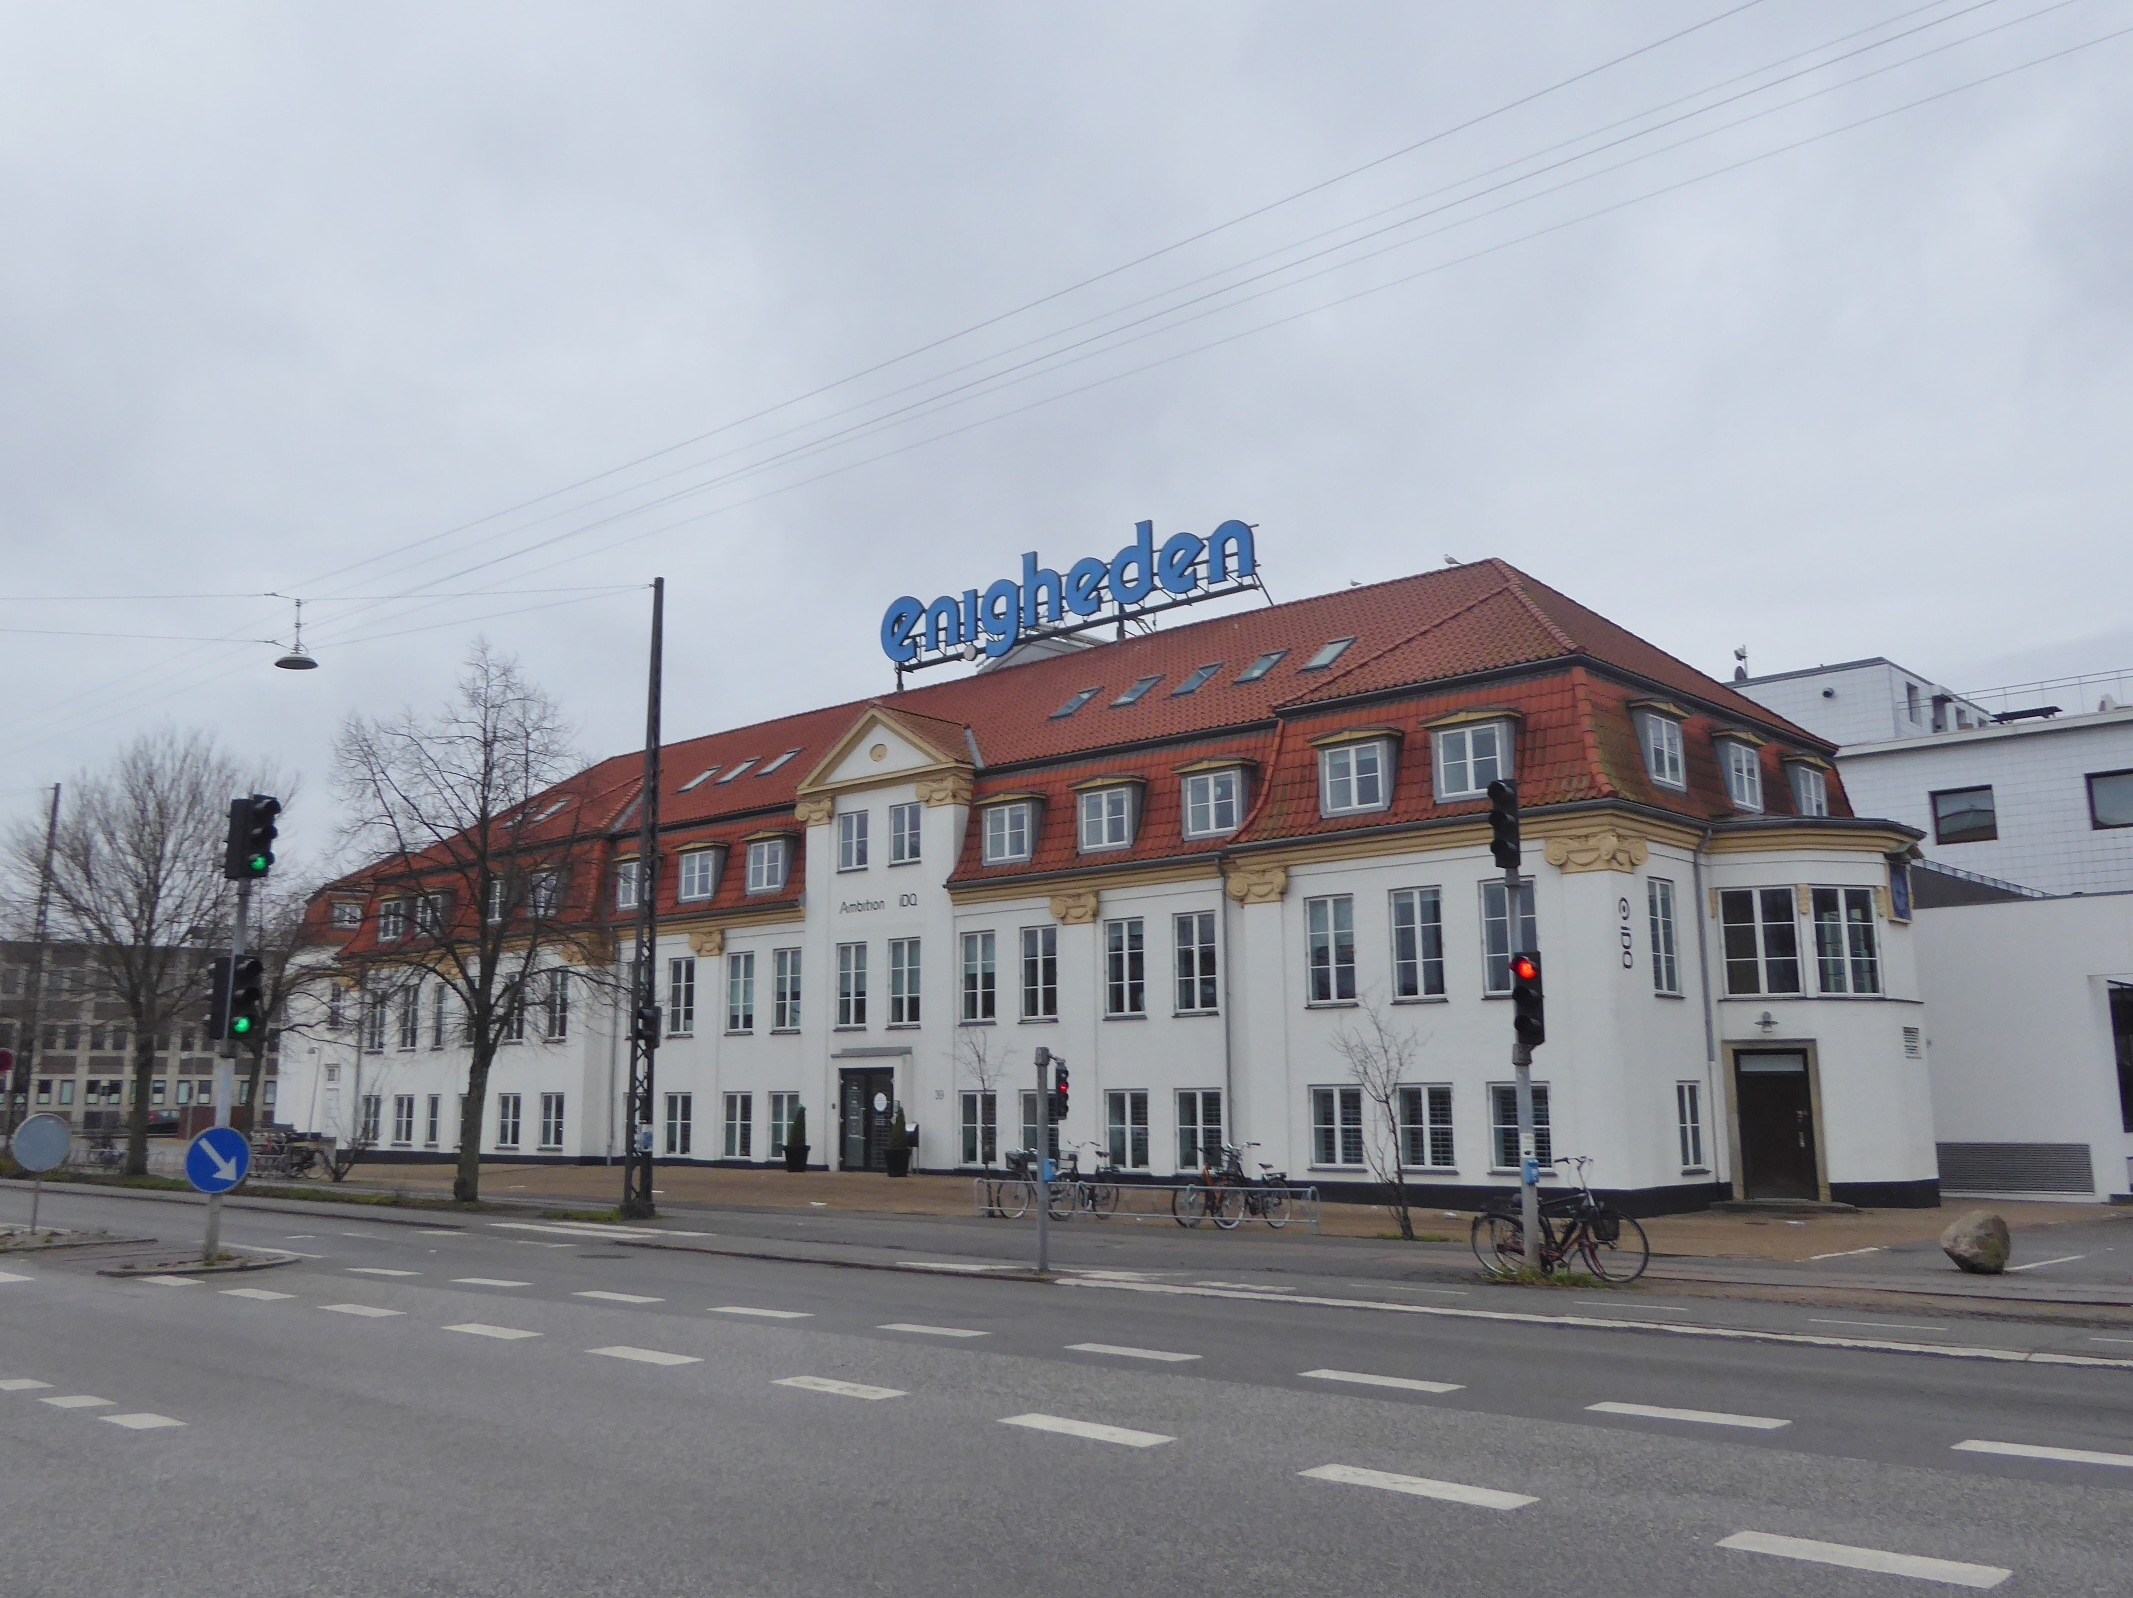 Det tidligere mejeri Enigheden på Lygten i Nordvest i København. Foto: taget 20. december 2020 af Leif Jørgensen. (CC BY-SA 4.0).